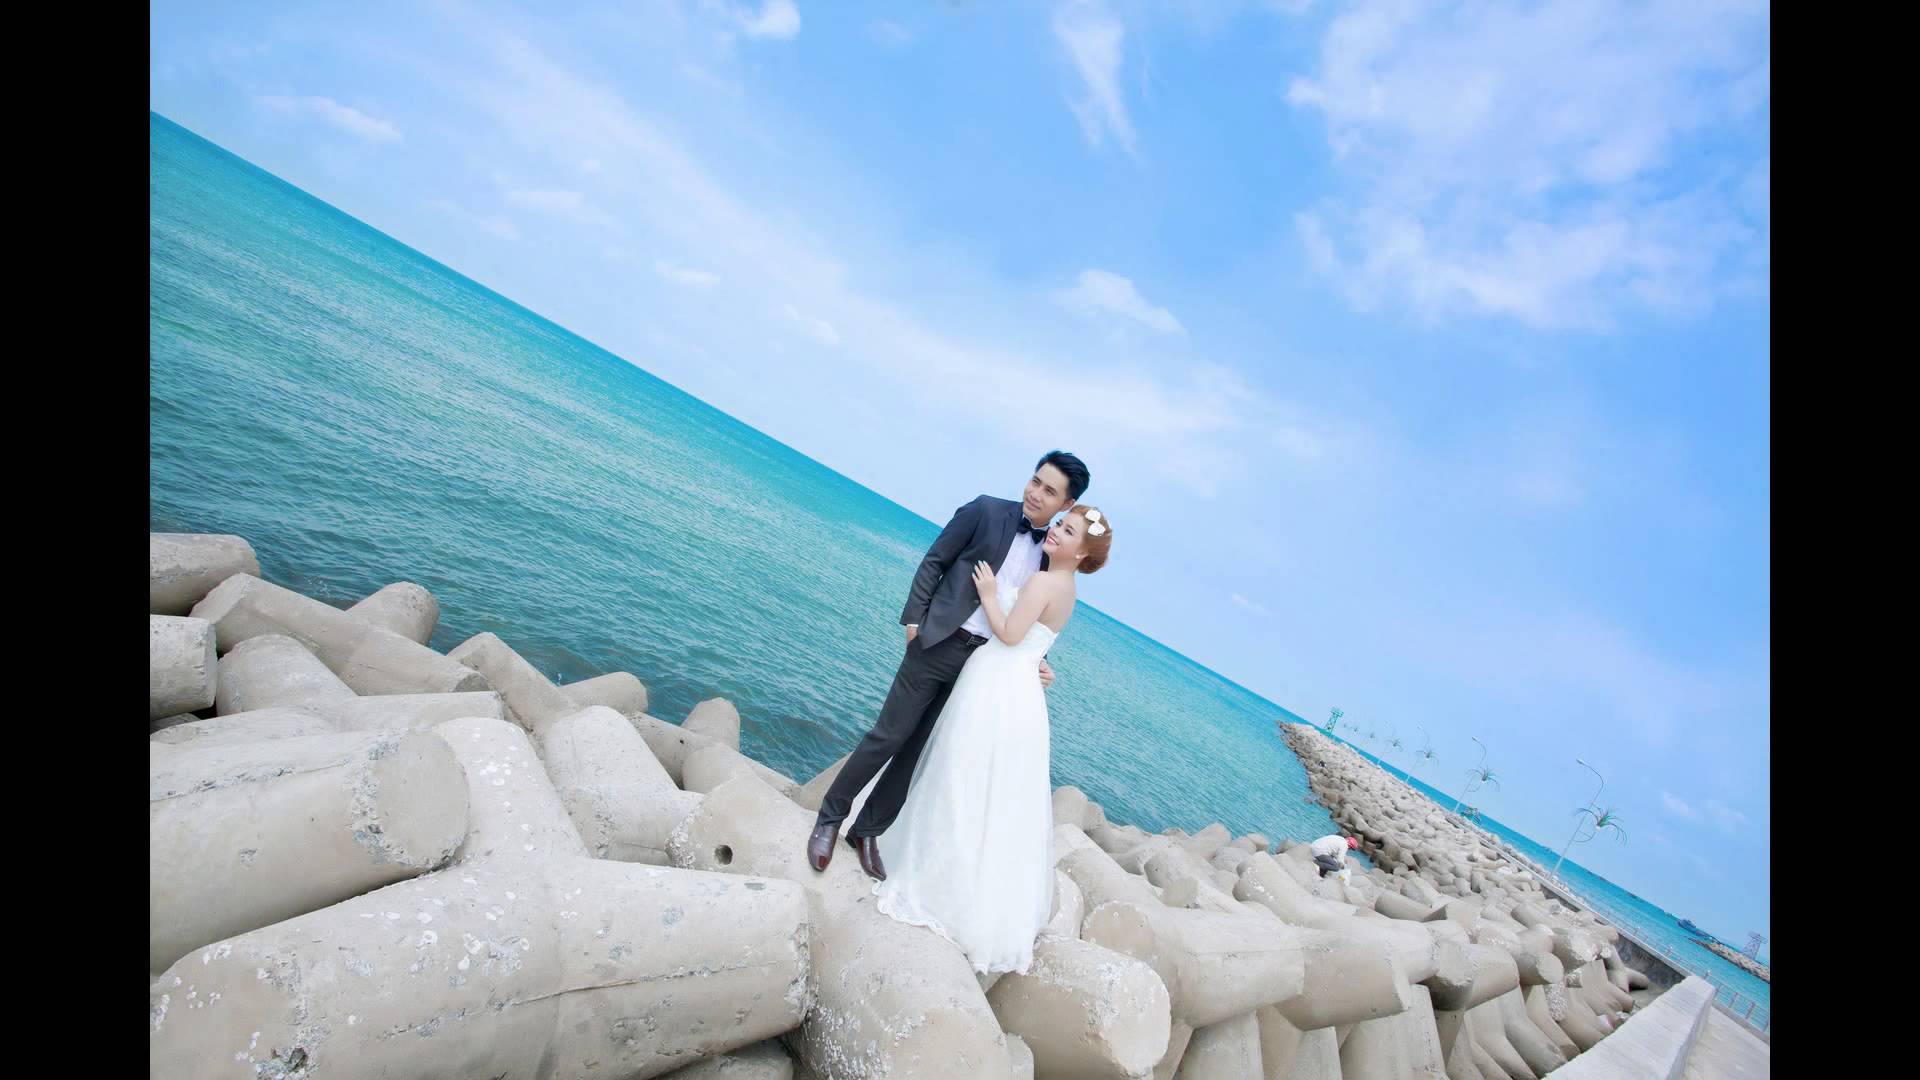 Album hình cưới chụp ở Phú Quốc - Áo Cưới Xinh Xinh - YouTube